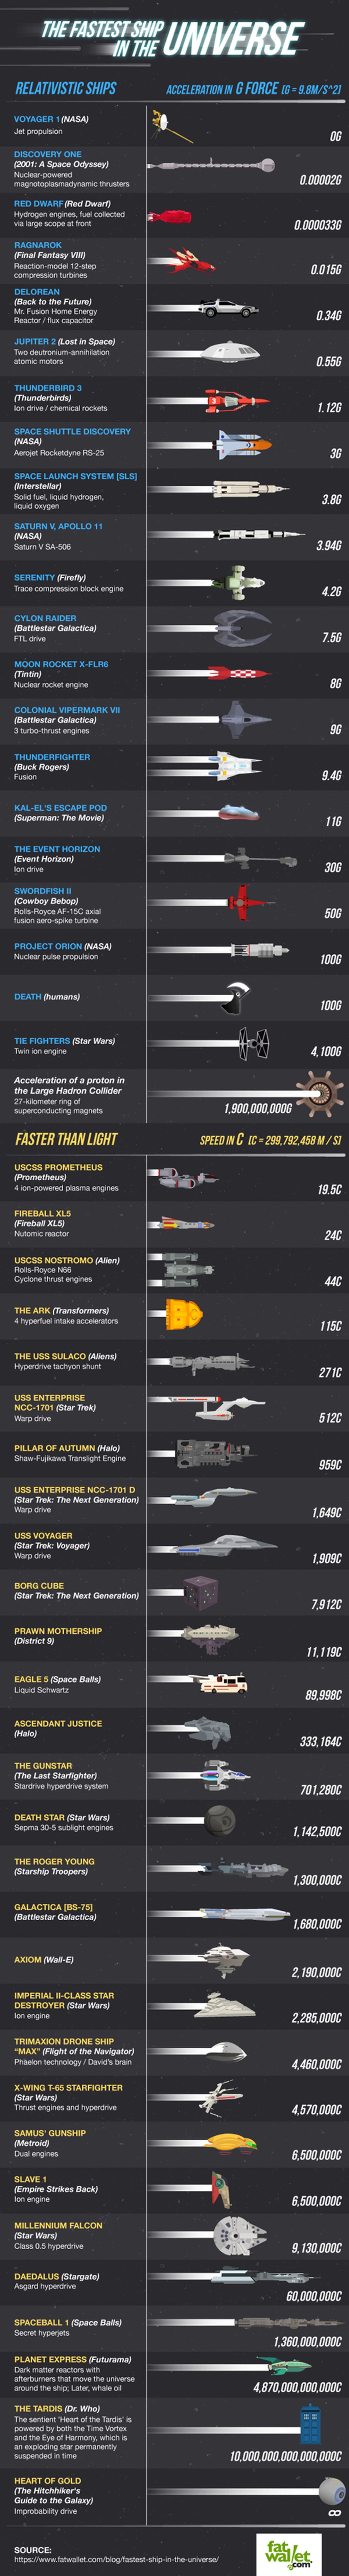 ¿Cuál es la nave espacial más rápida del universo?